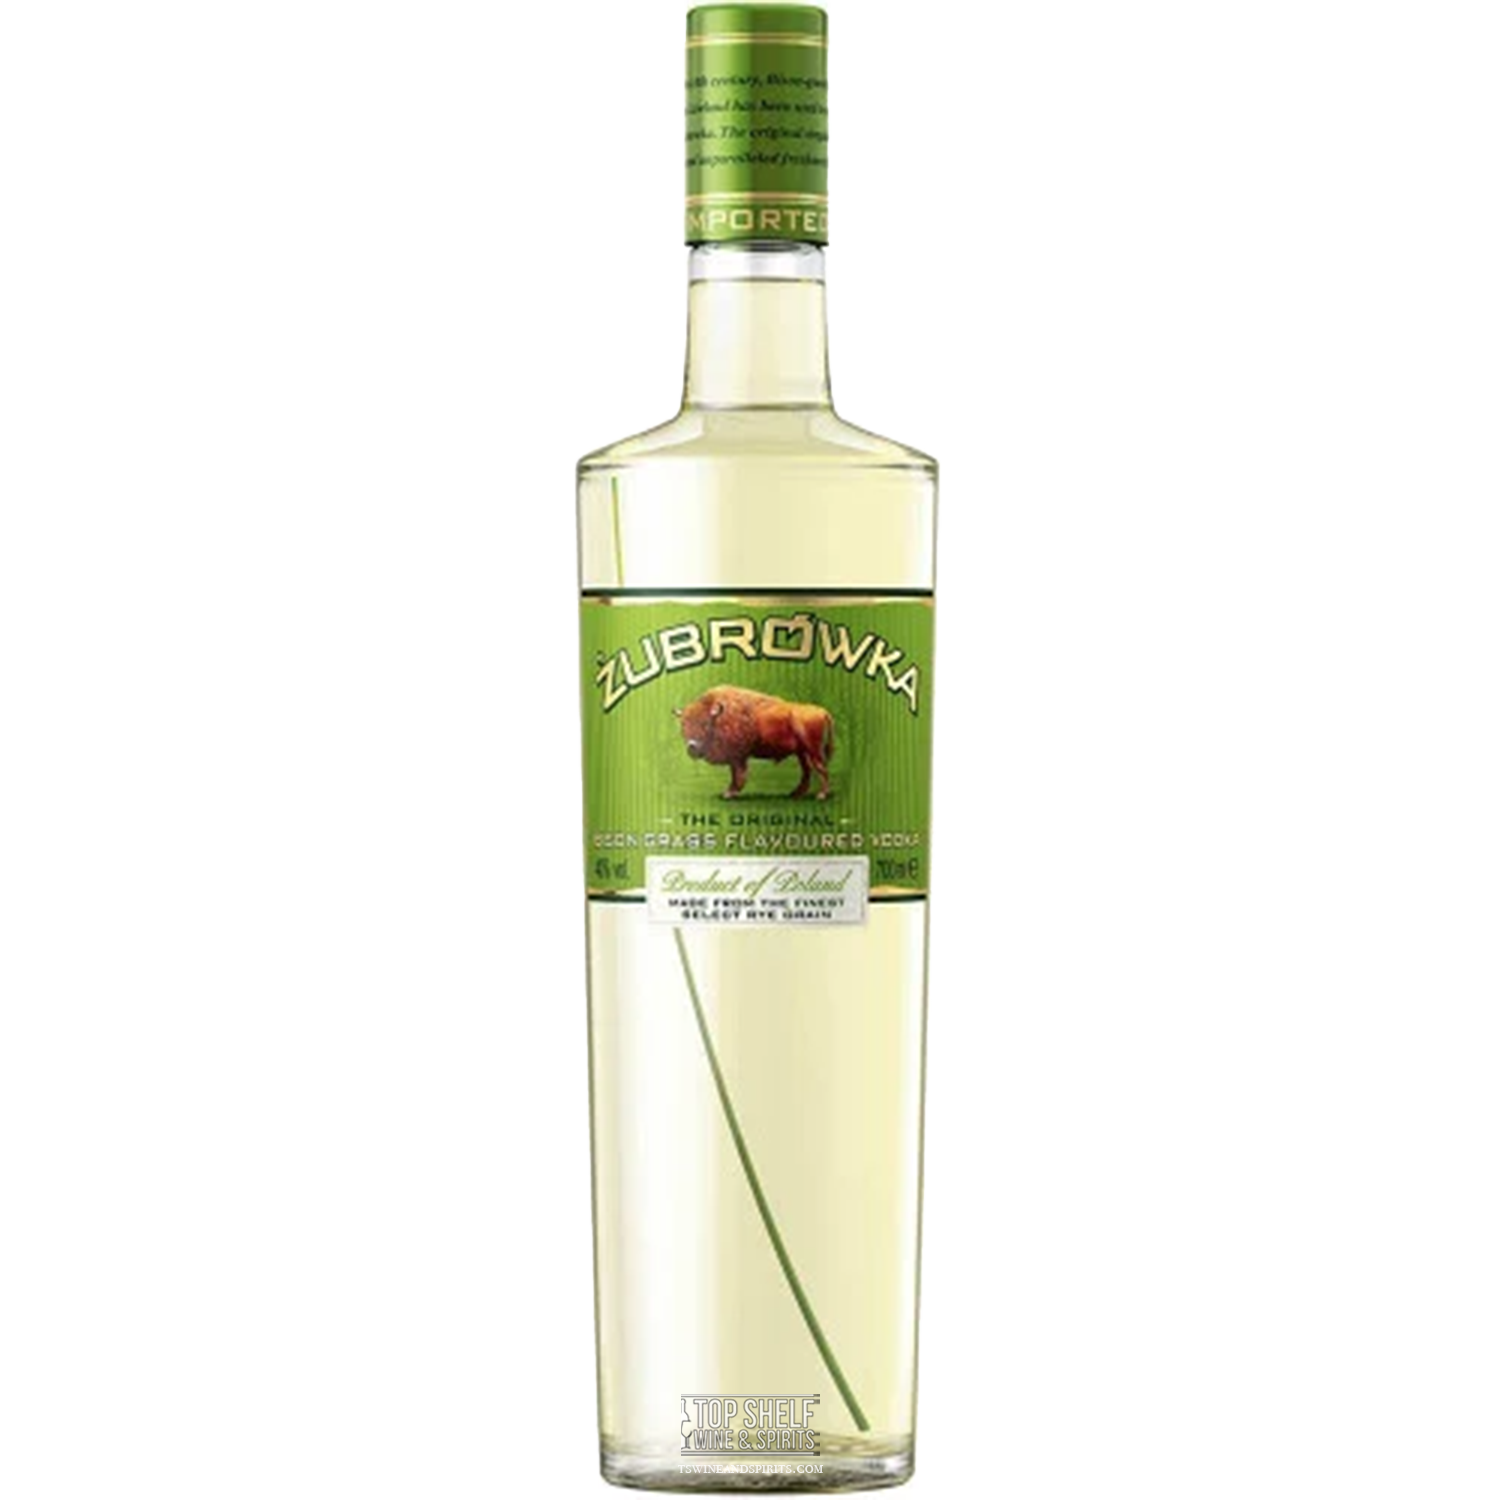 Grass | & Delivery Żubrówka Bison Vodka Gifting